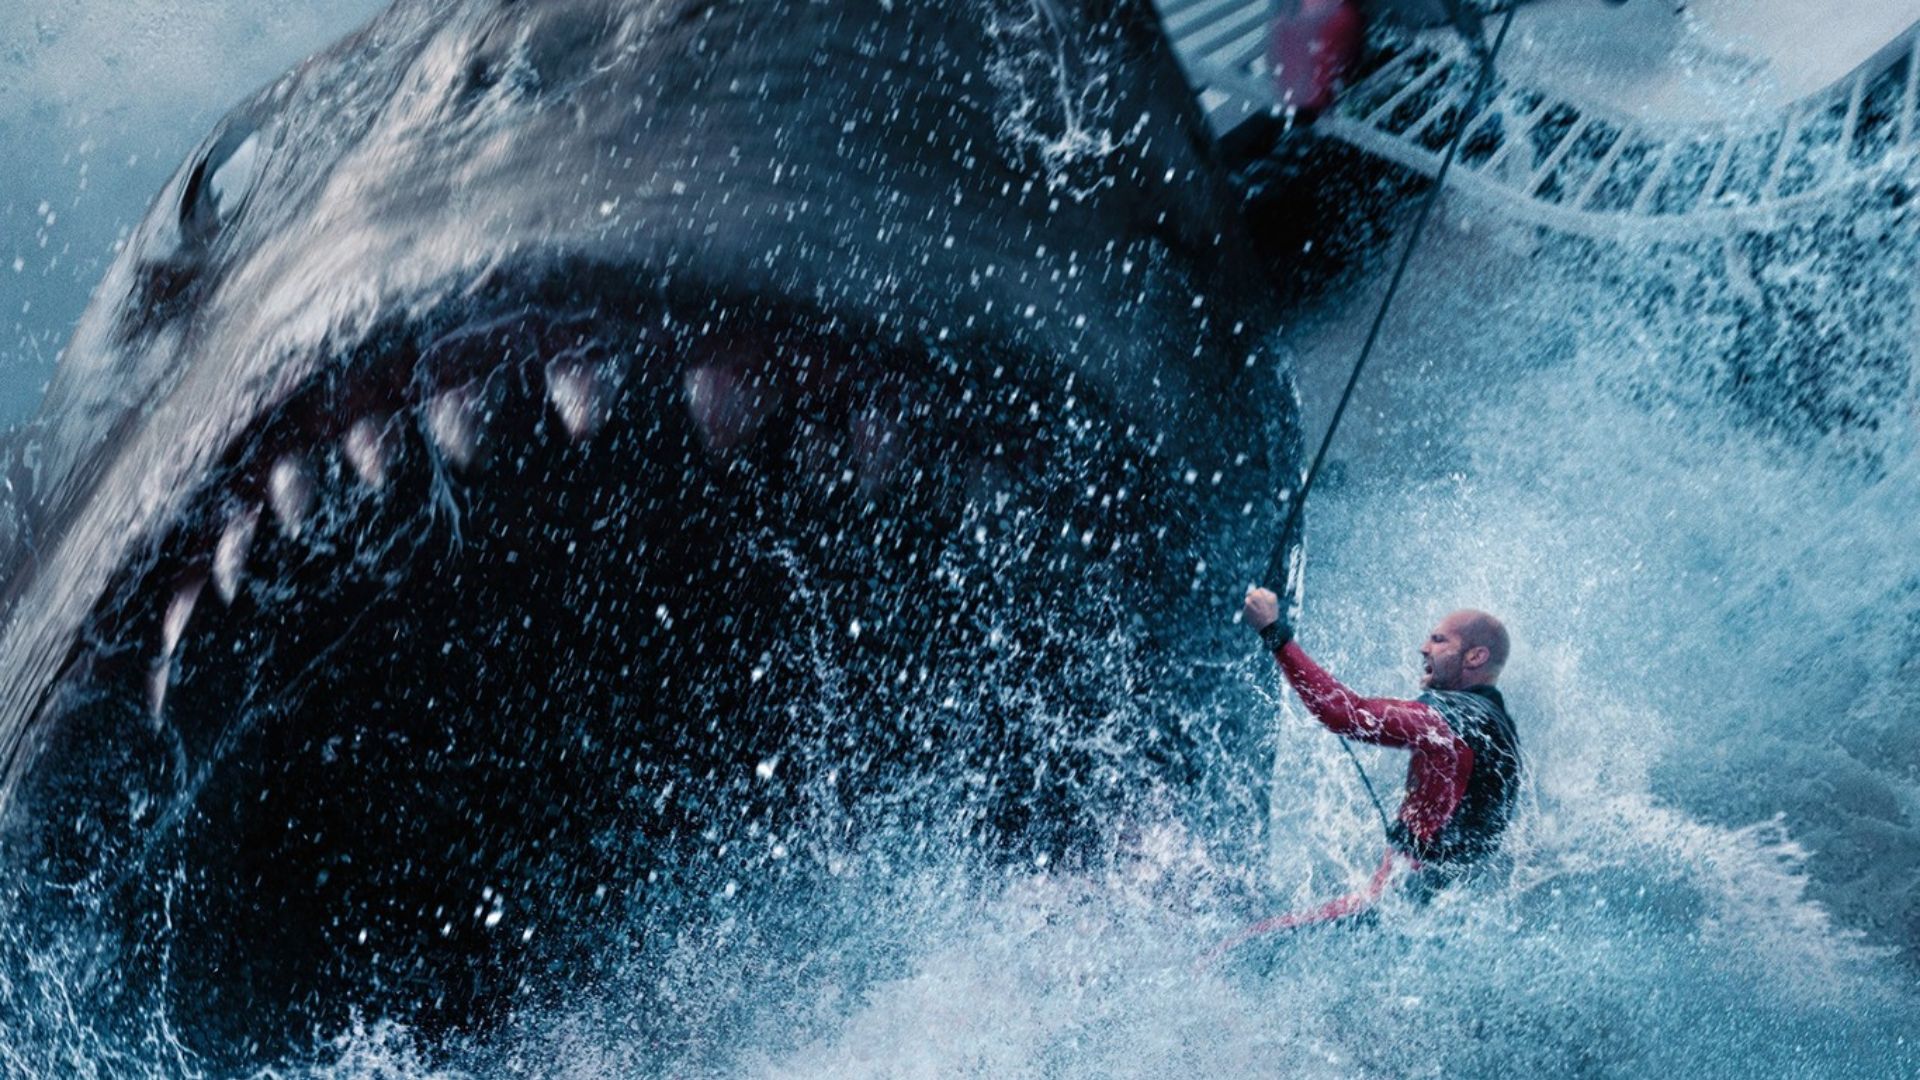 Imagen promocional de gran tiburón